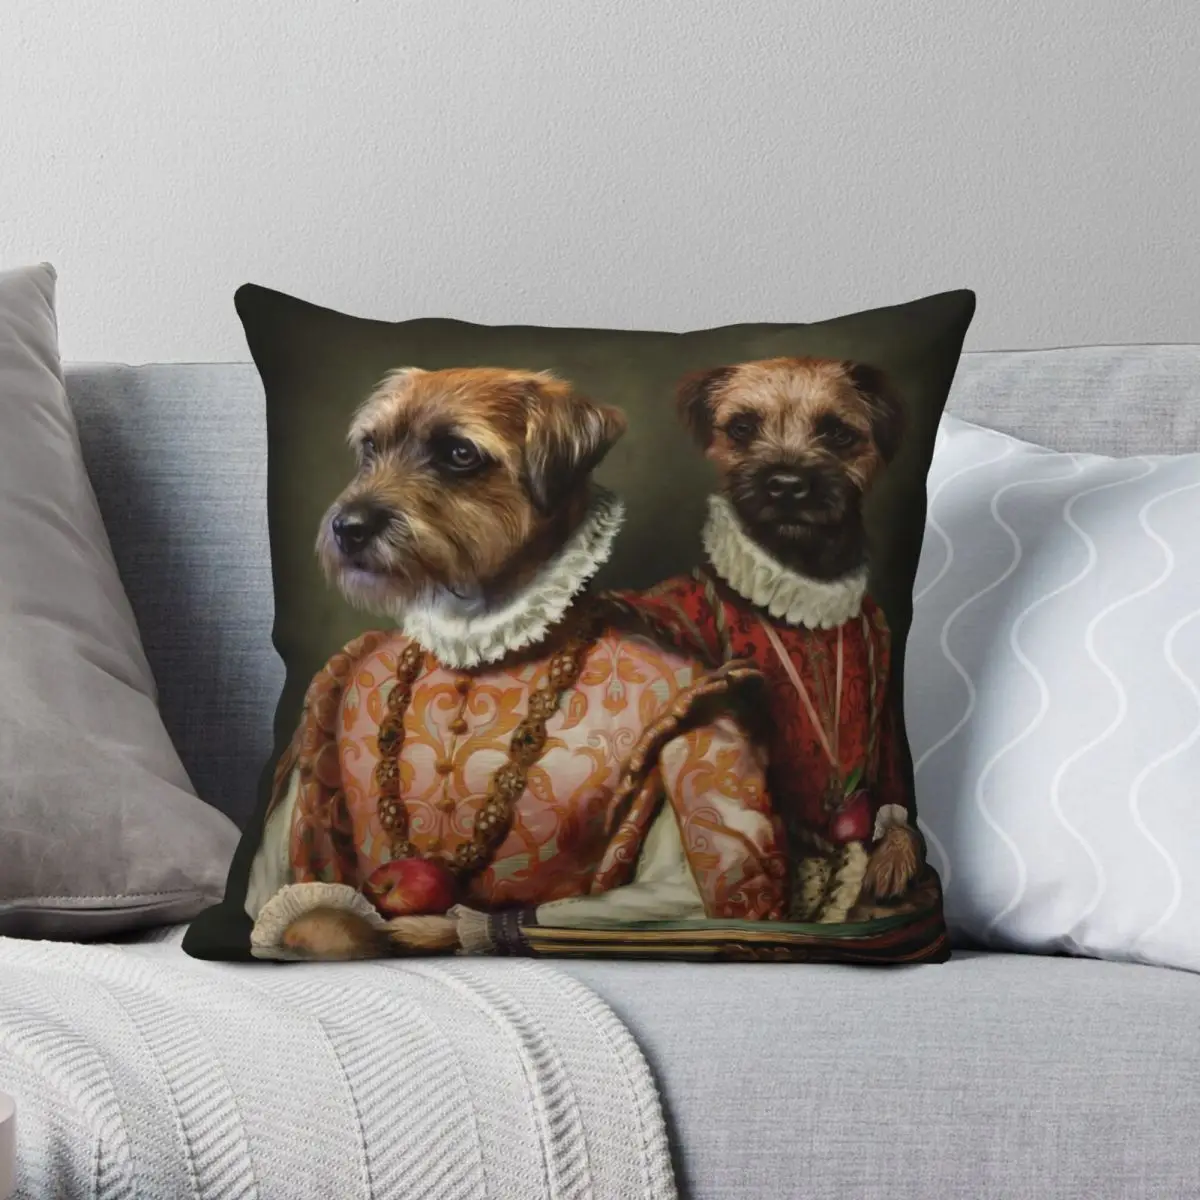 

Наволочка с рисунком собаки Border Terrier, квадратная, полиэстер, лен, бархат, печатный, на молнии, Декор Чехлы на подушки для дома